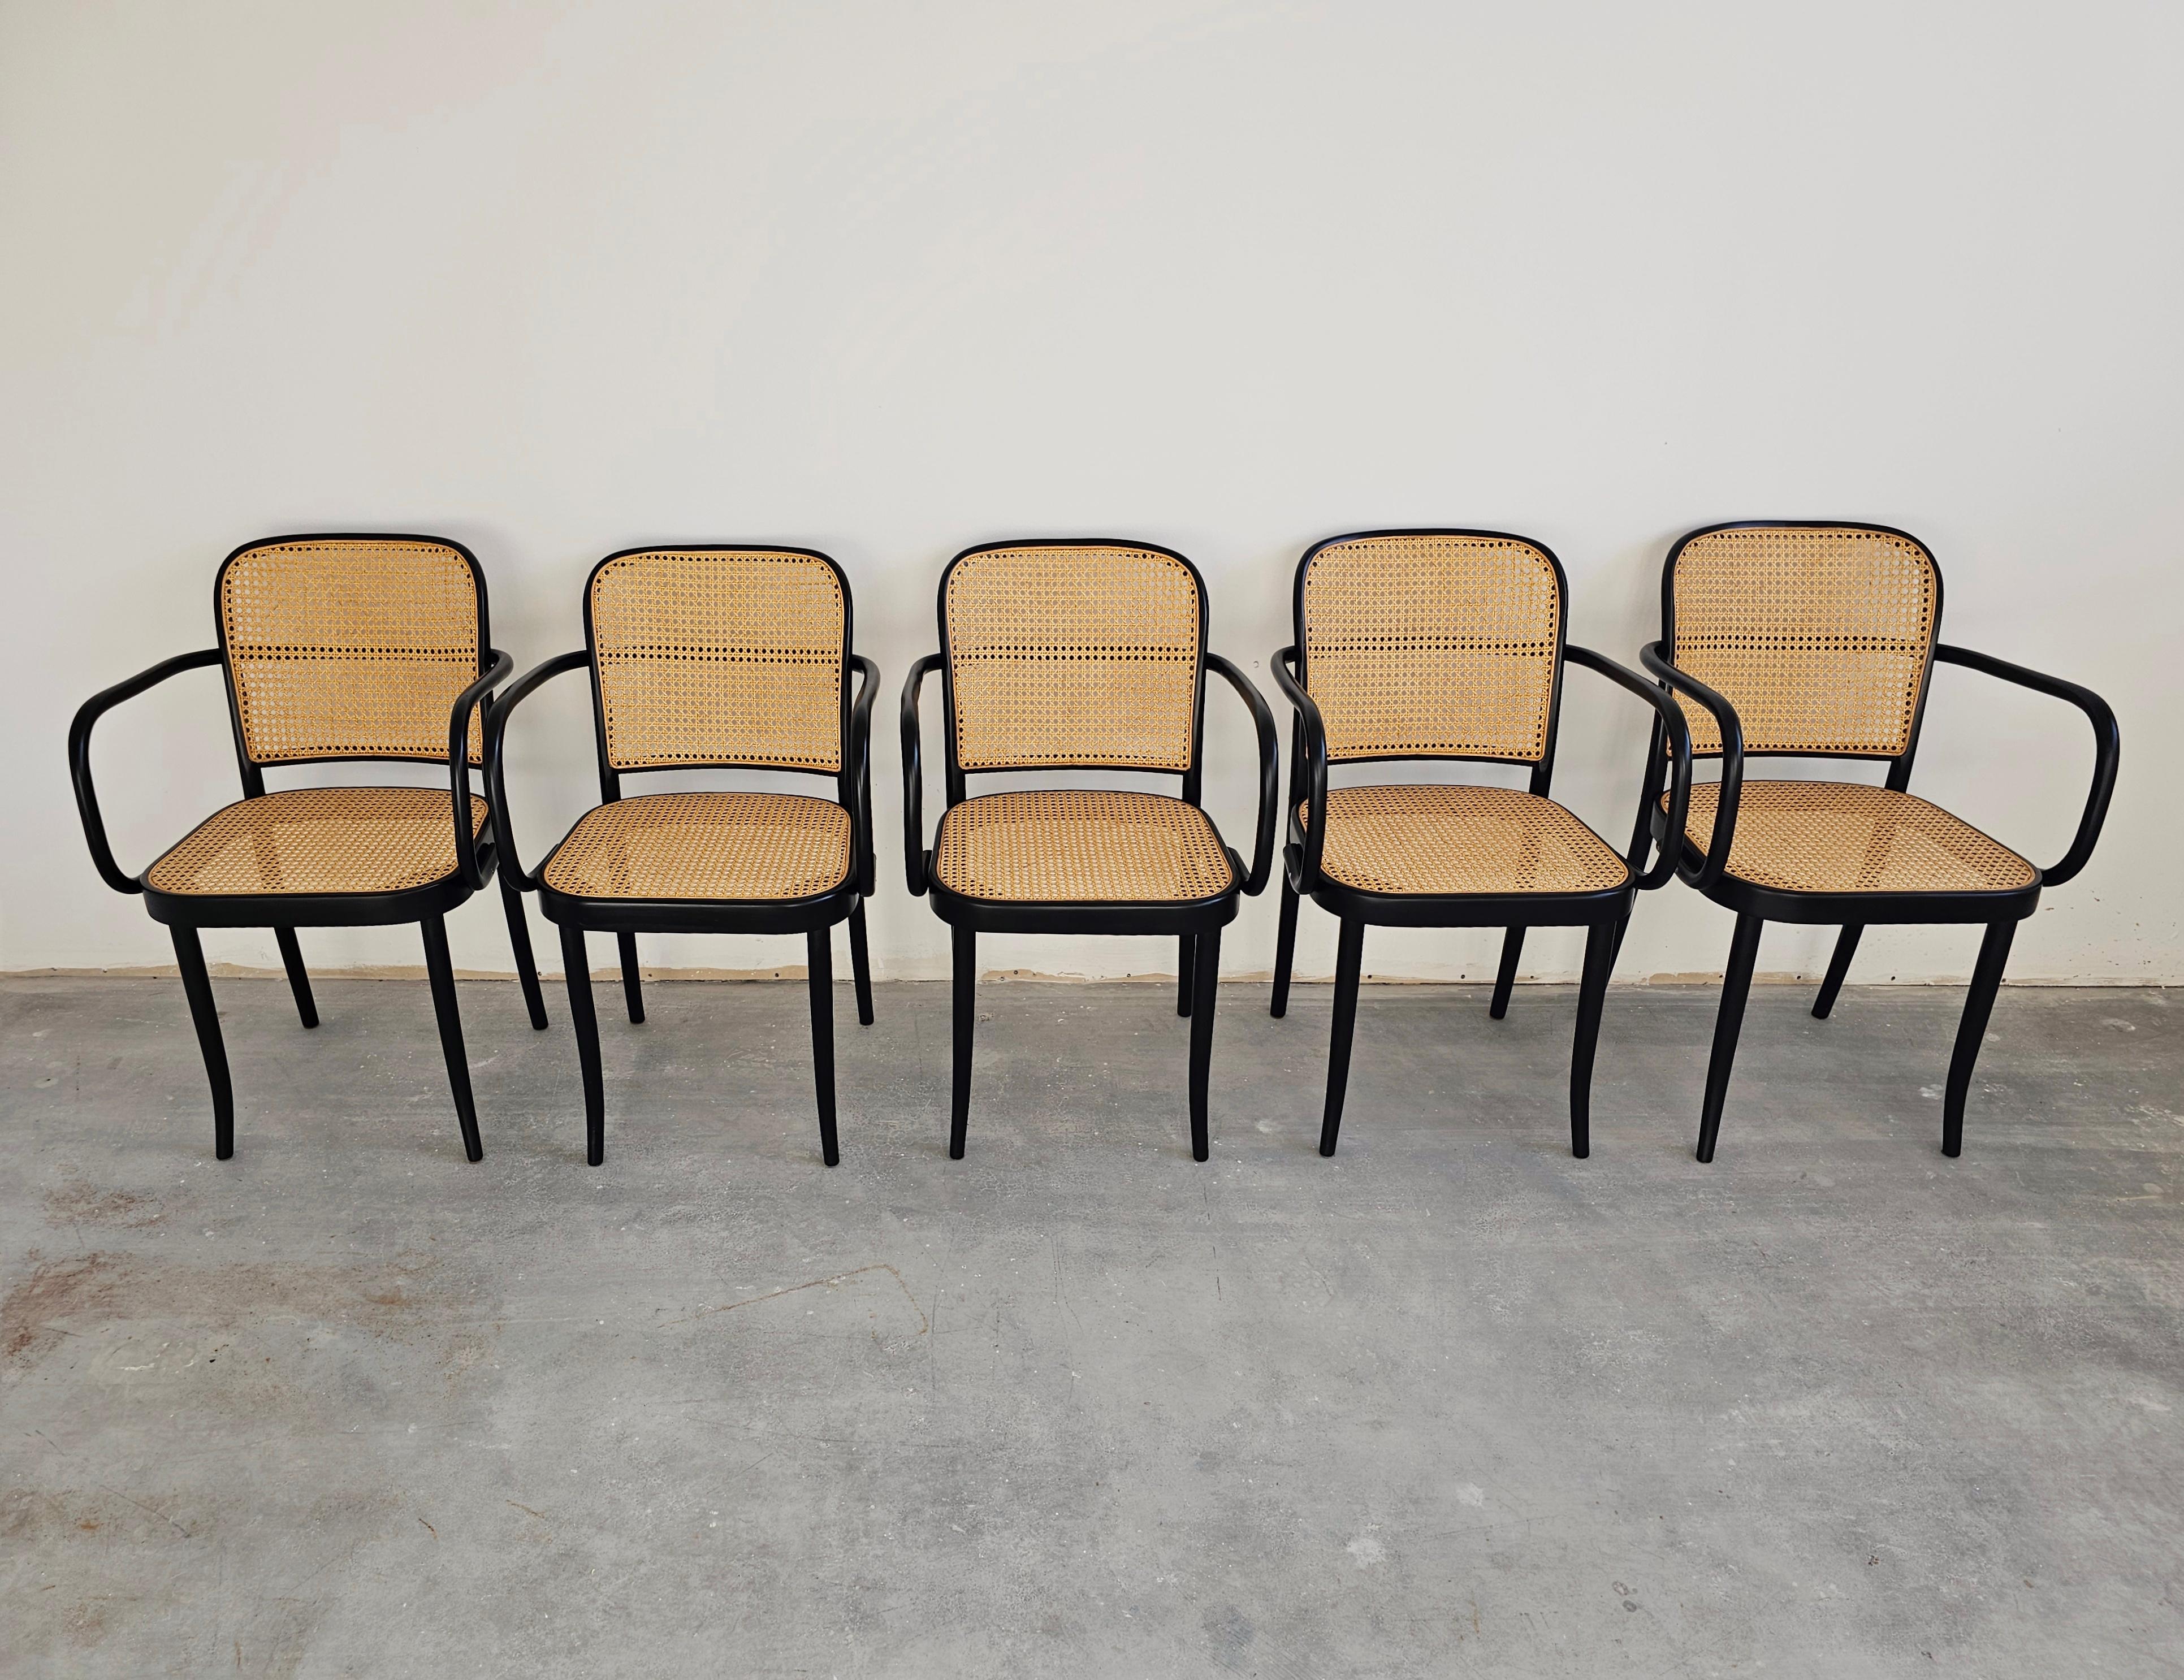 Vous trouverez dans cette liste de rares chaises de salle à manger vintage conçues par Josef Hoffmann pour Mundus - Model Prague. Les chaises sont en bois courbé de hêtre peint en noir avec des sièges et des dossiers en rotin.

Les chaises ont été